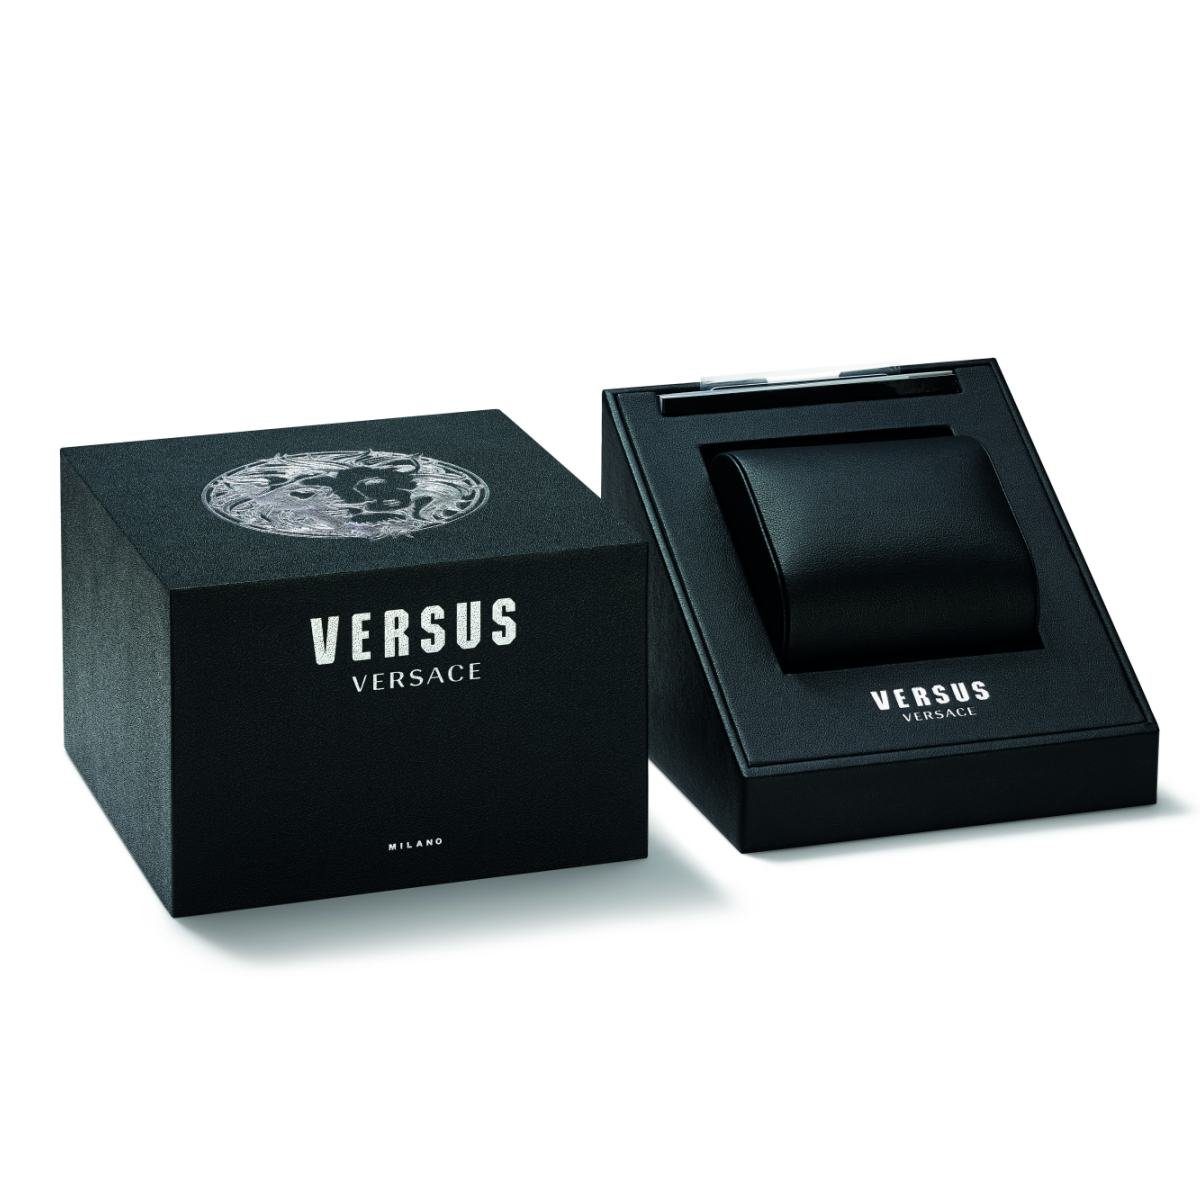 VSP772518 Versus Versace Quarzuhr